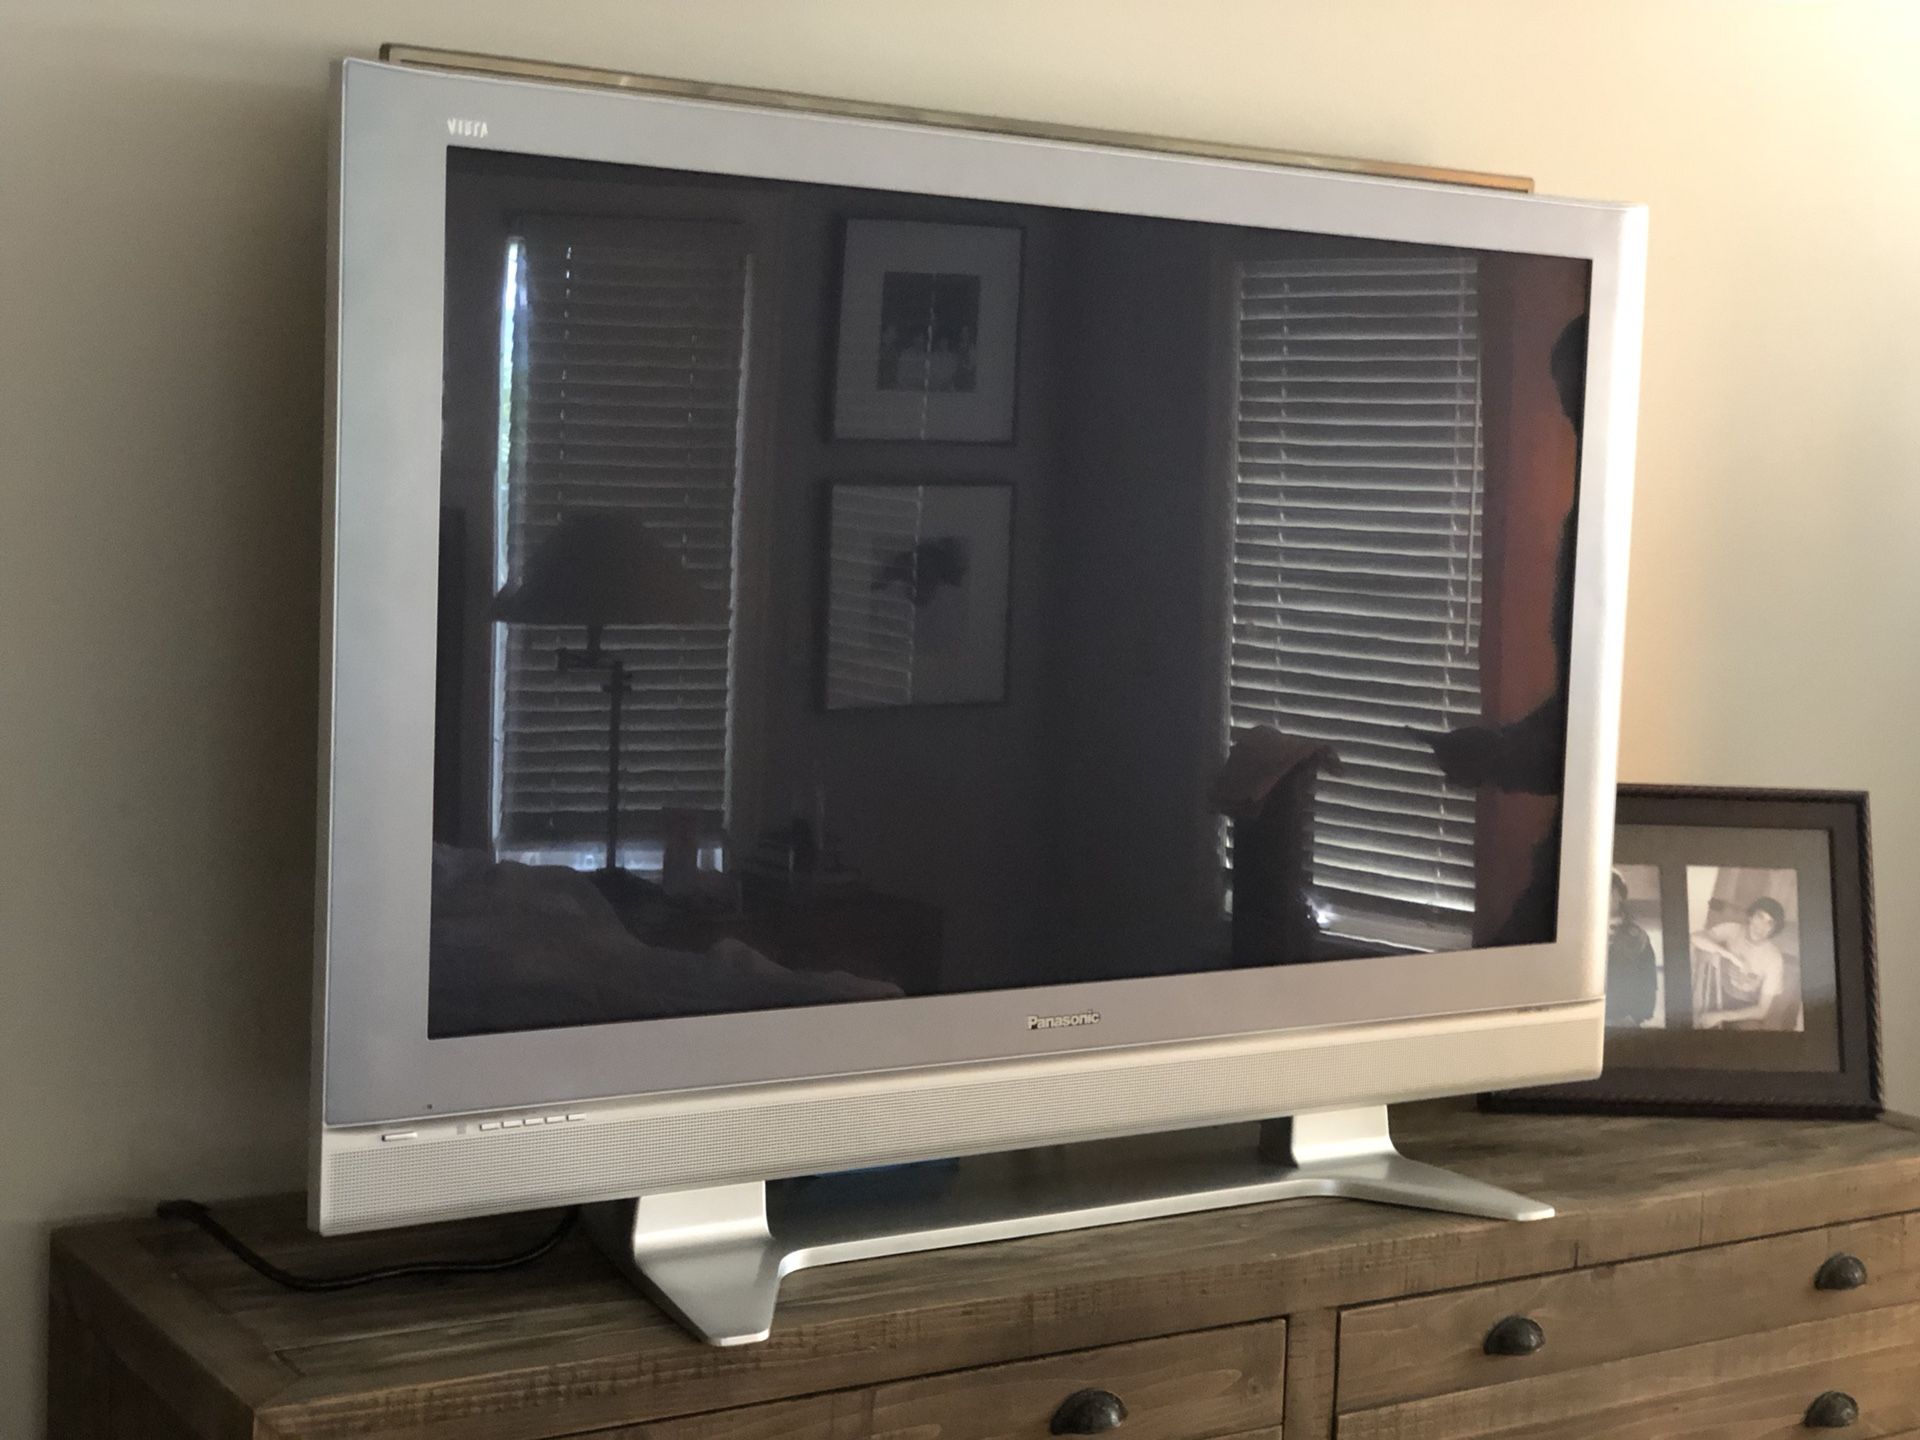 50 inch Panasonic Flatscreen TV with stand